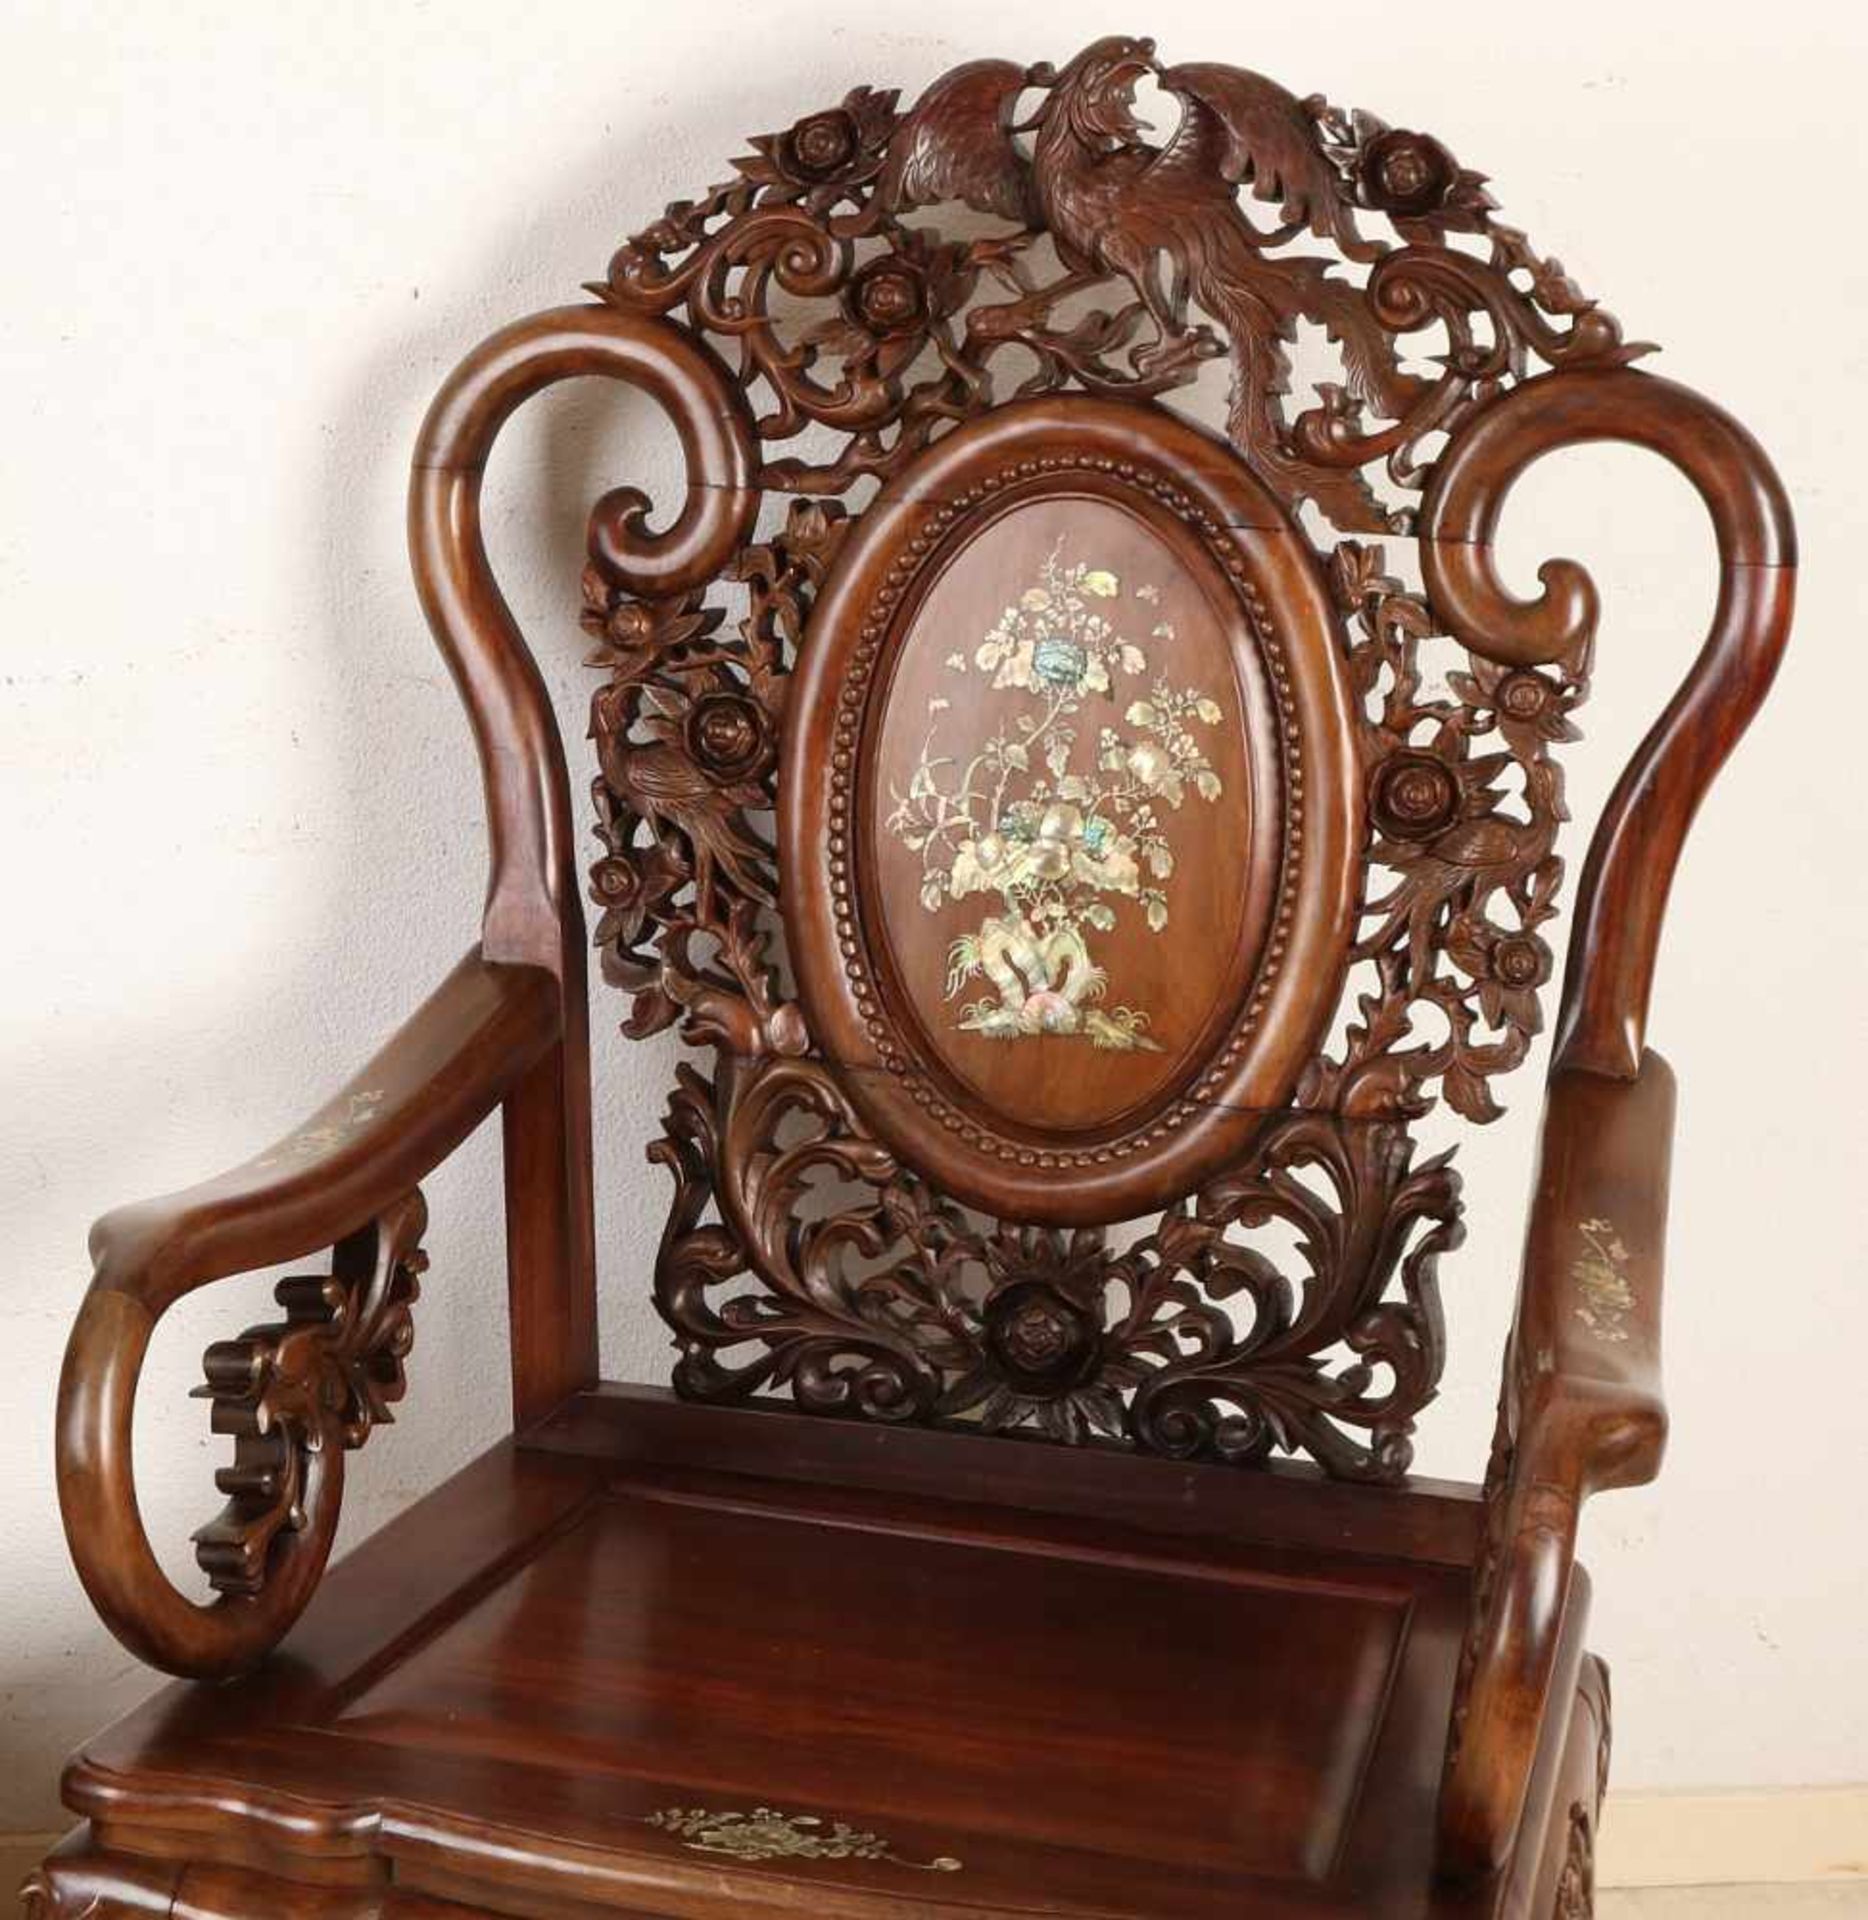 Zwei chinesische Holz geschnitzte Stühle mit Paradiesvogel / Blumenschnitzerei + Perlmutt-Inlay. - Image 2 of 3